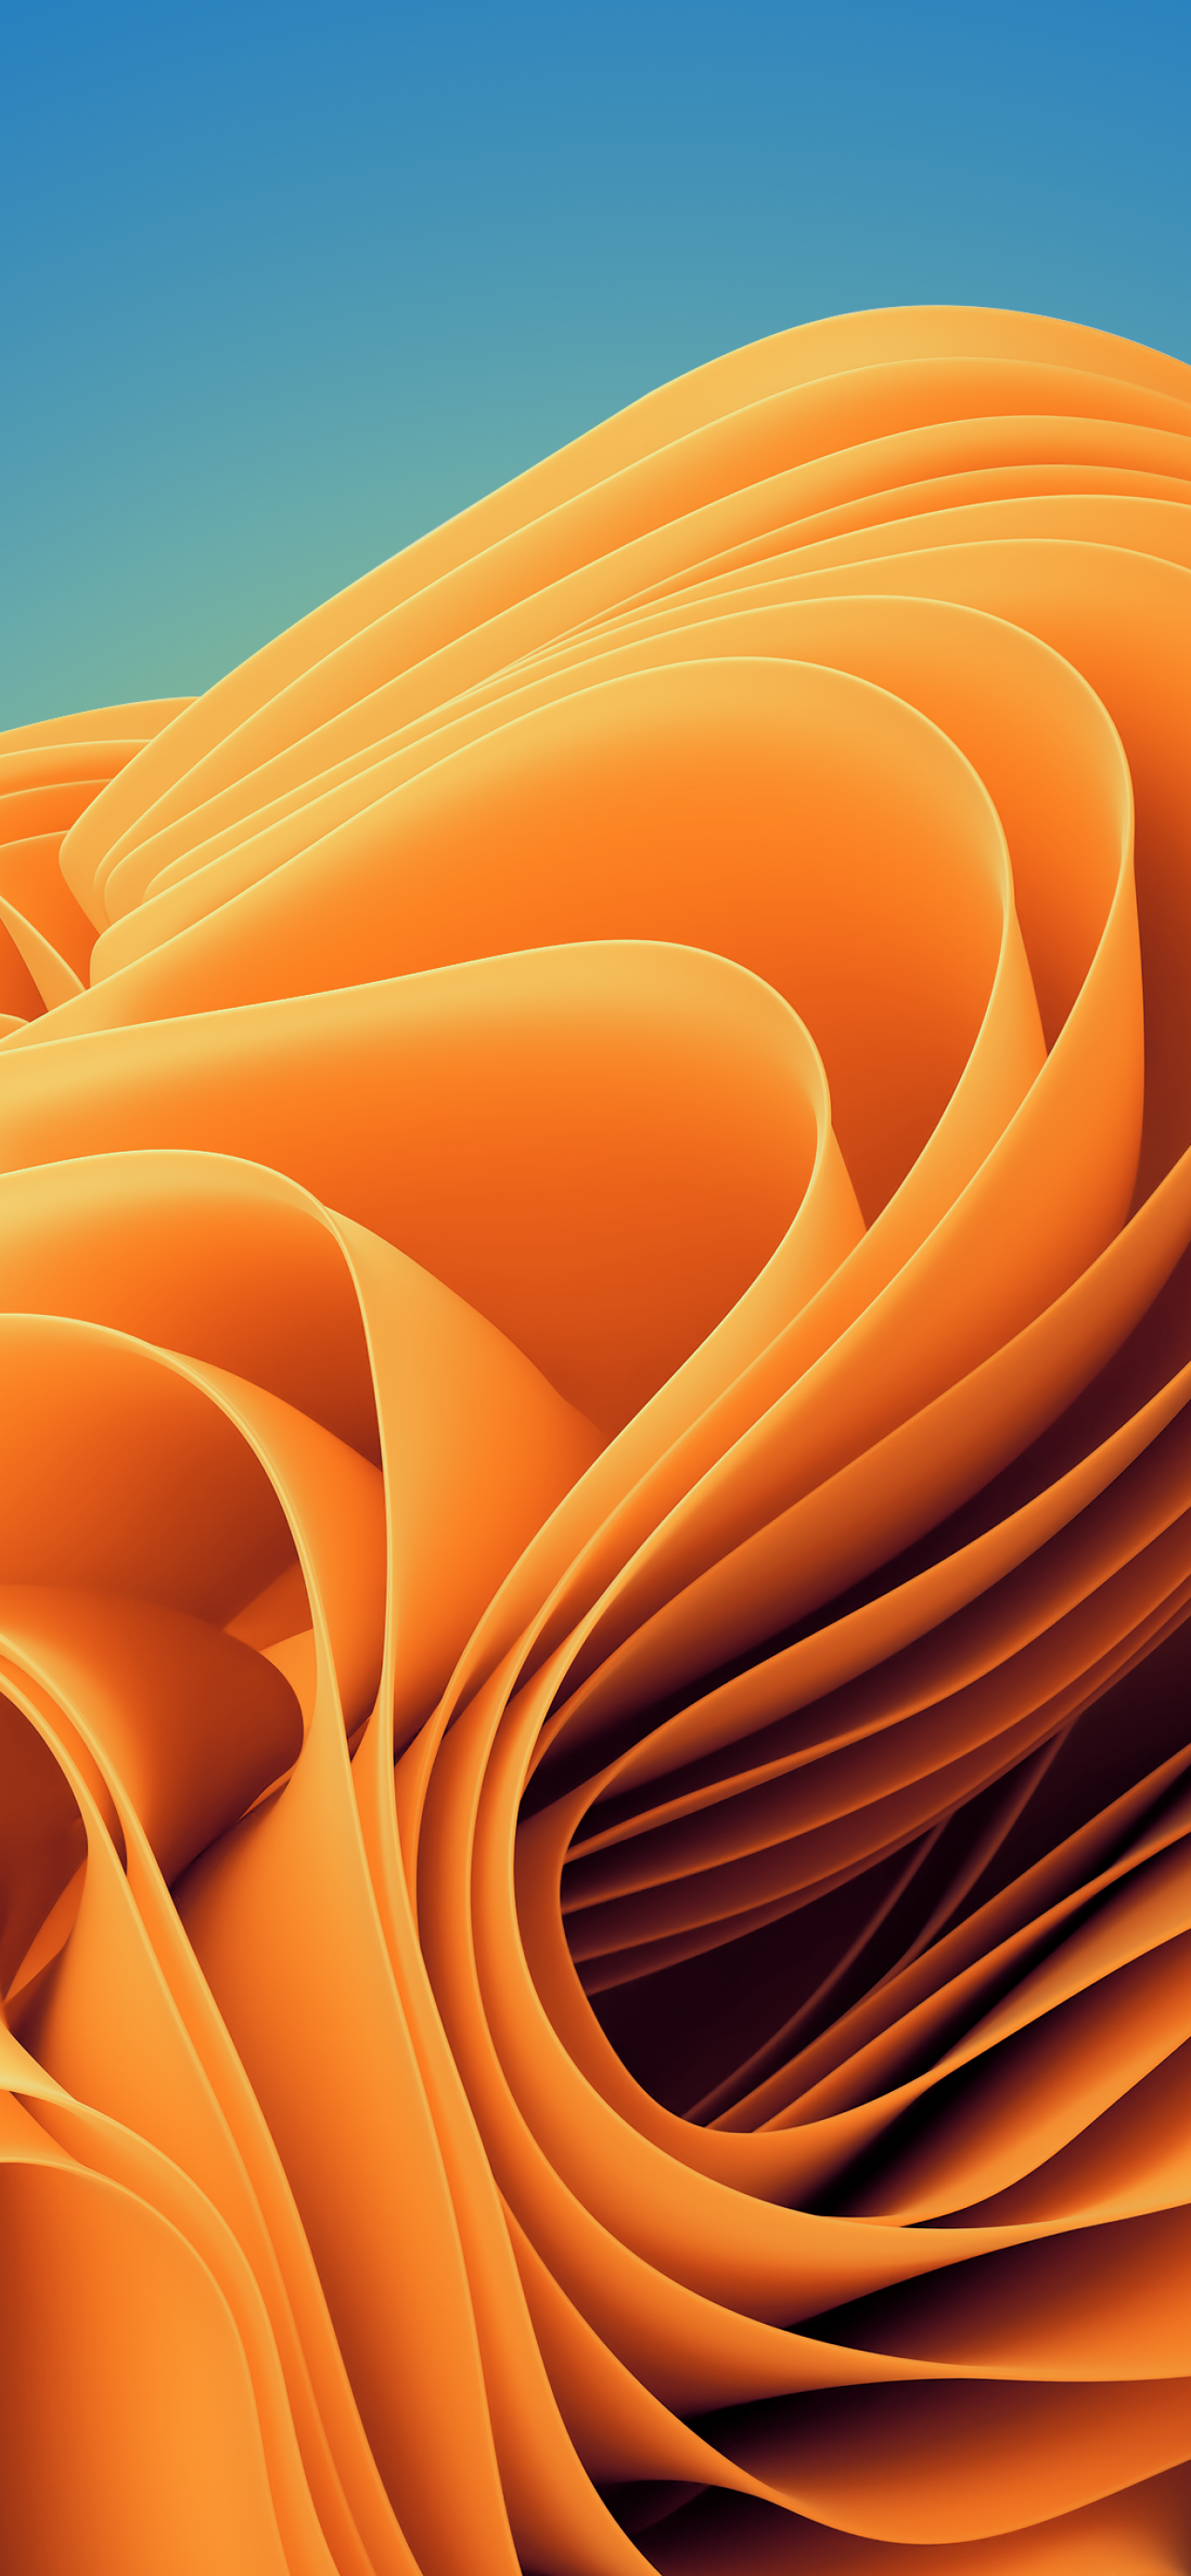 Điểm nhấn cho máy tính của bạn với hình nền Windows 11 4K đầy trừu tượng với gam màu cam hoàng hôn bất tận. Chi tiết sắc nét, độ phân giải cao, hình nền này sẽ đưa bạn vào không gian sống động đầy phong cách.